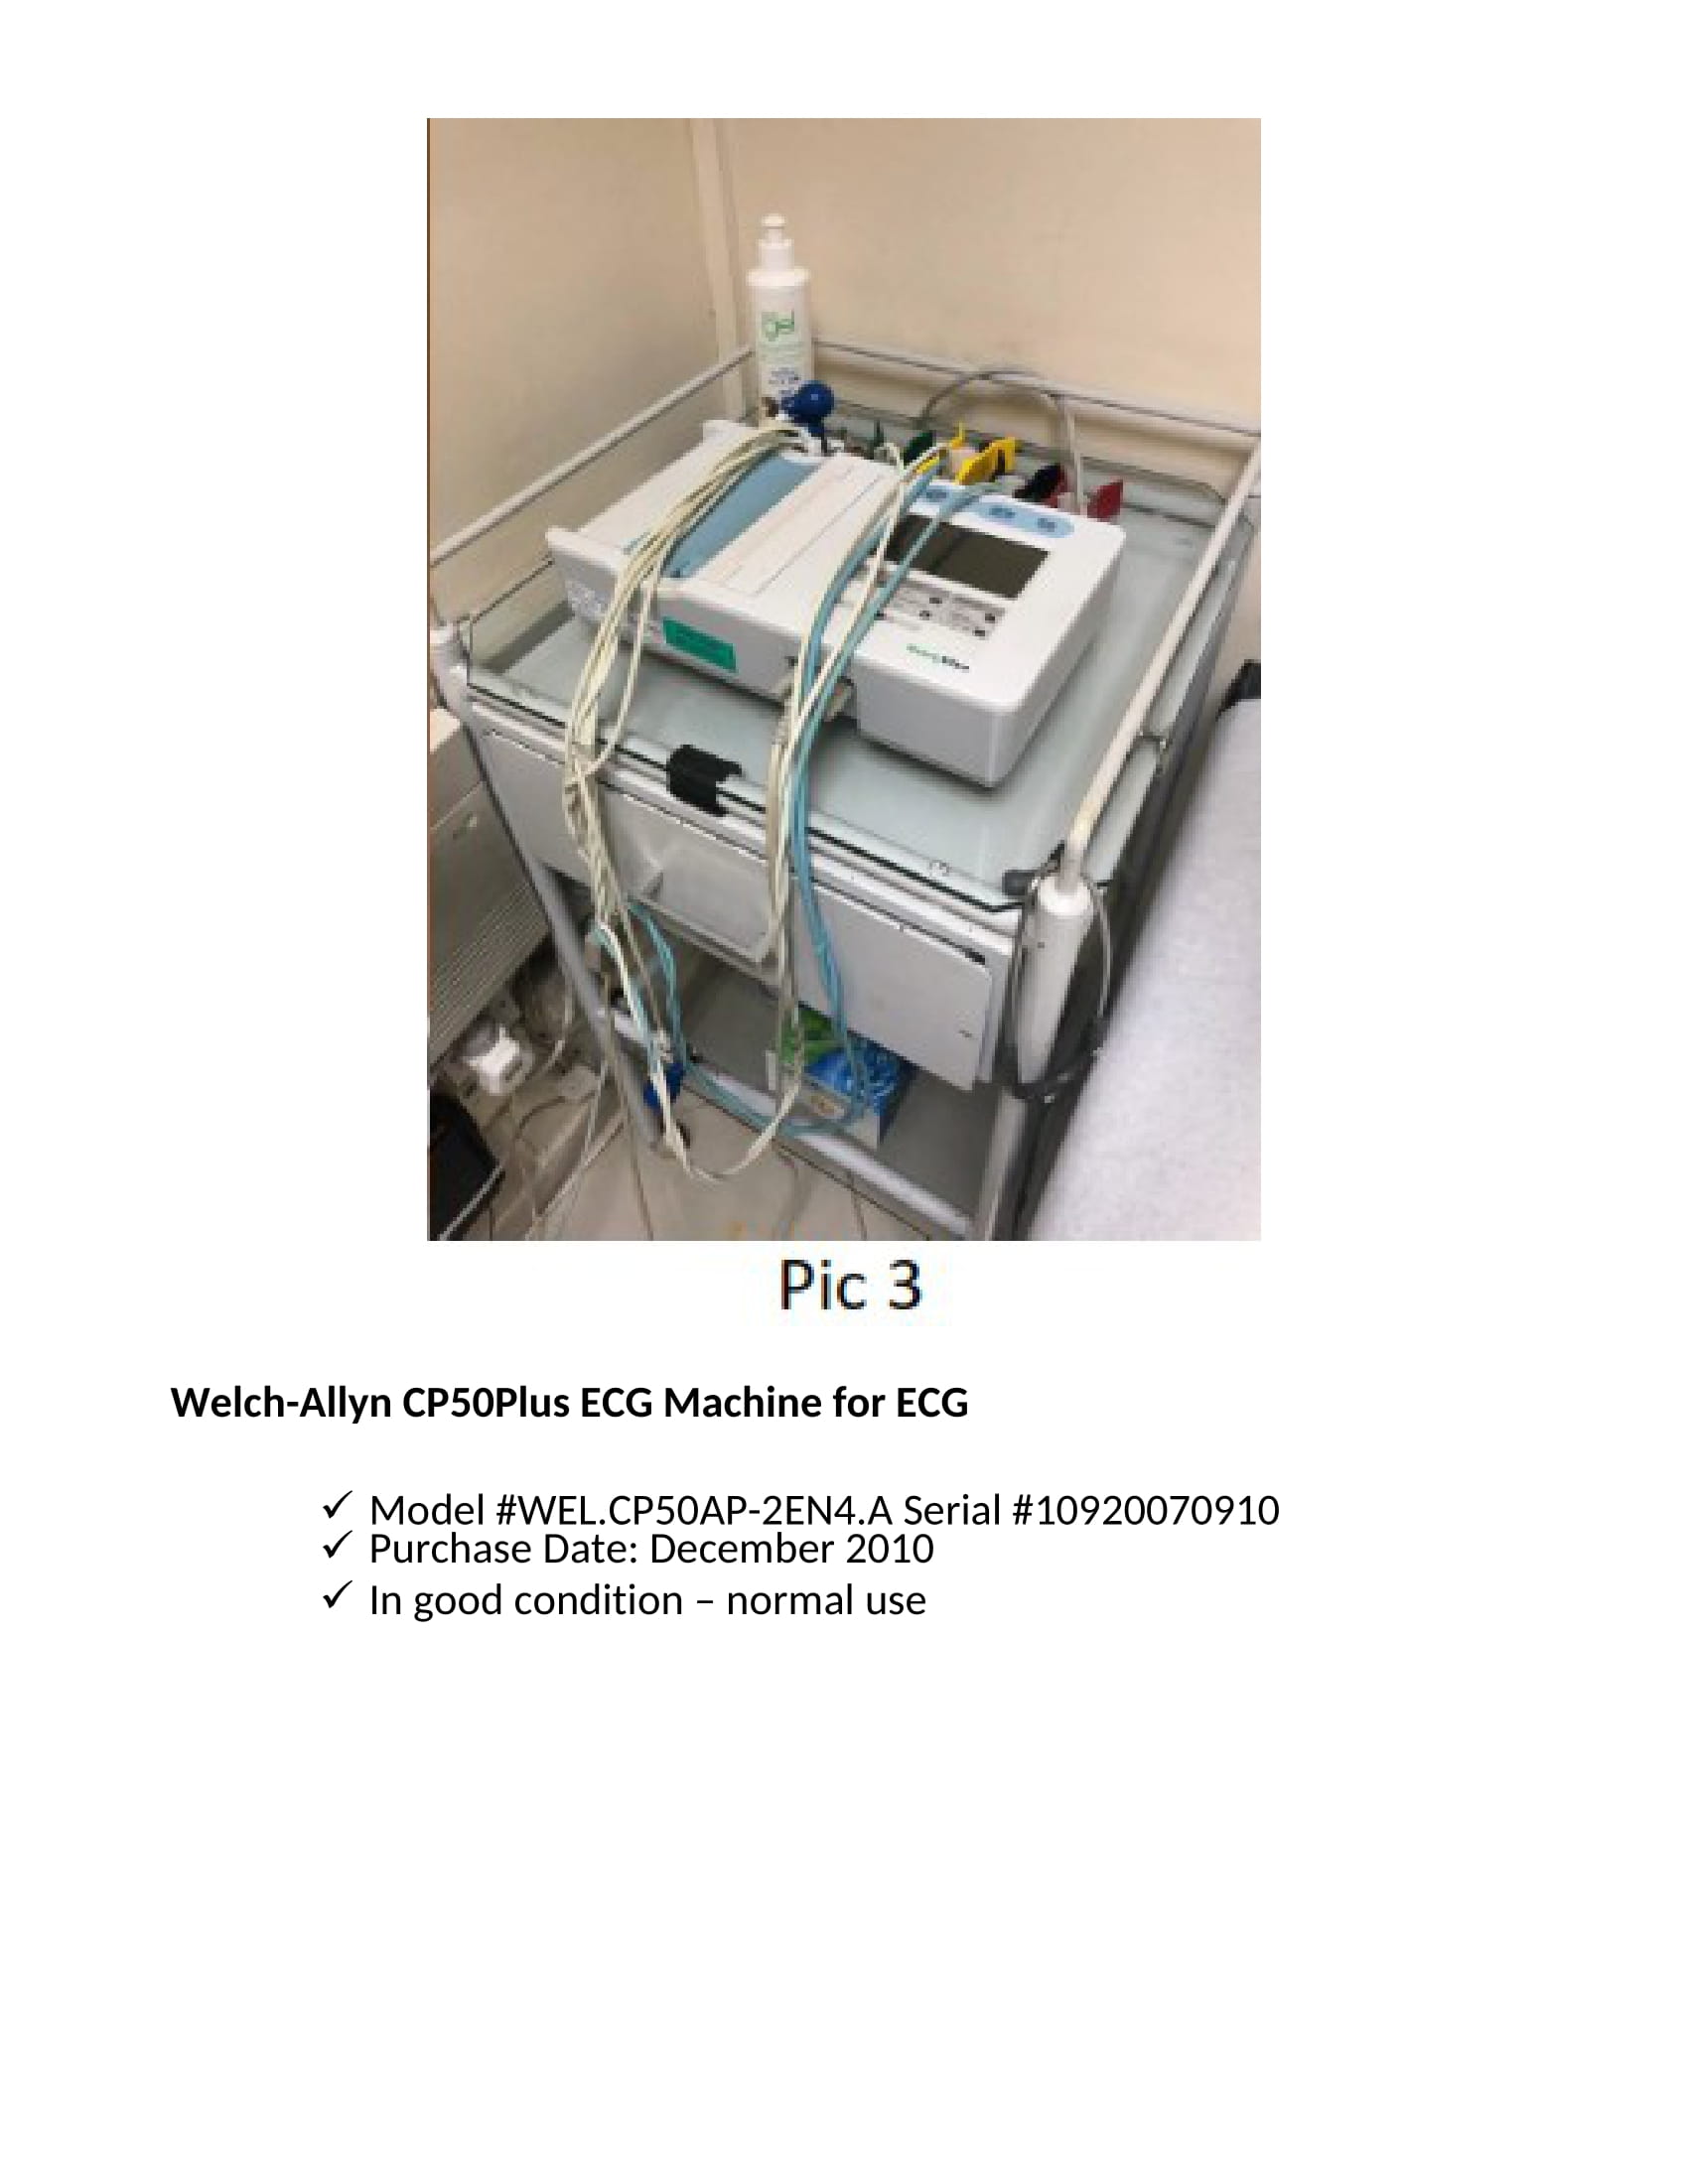 WELCH-ALLYN CP50PLUS ECG MACHINE